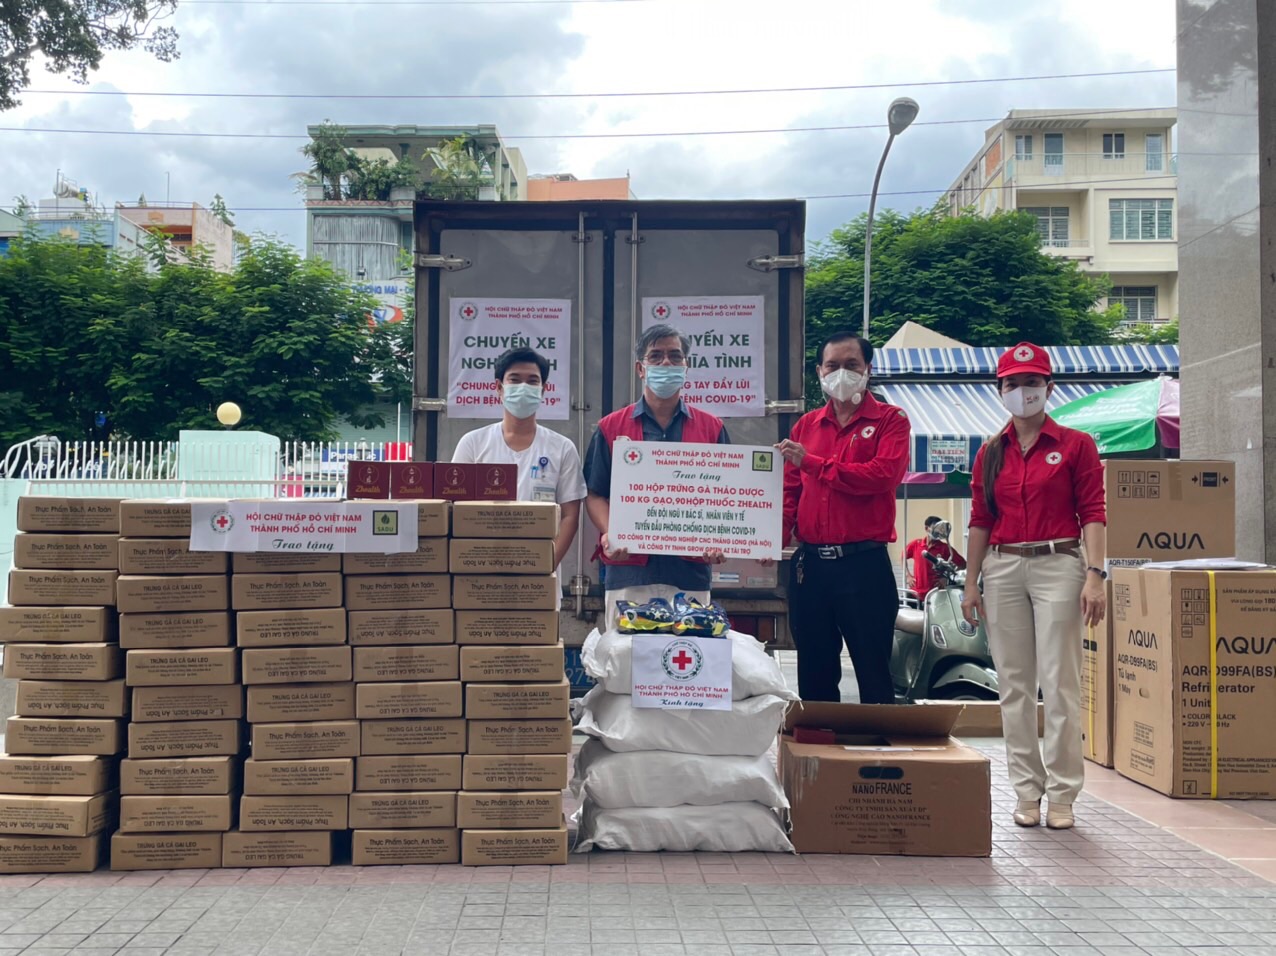 Chung tay cùng Hội Chữ Thập Đỏ Tp Hồ Chí Minh ủng hộ công tác phòng chống dịch Covid – 19